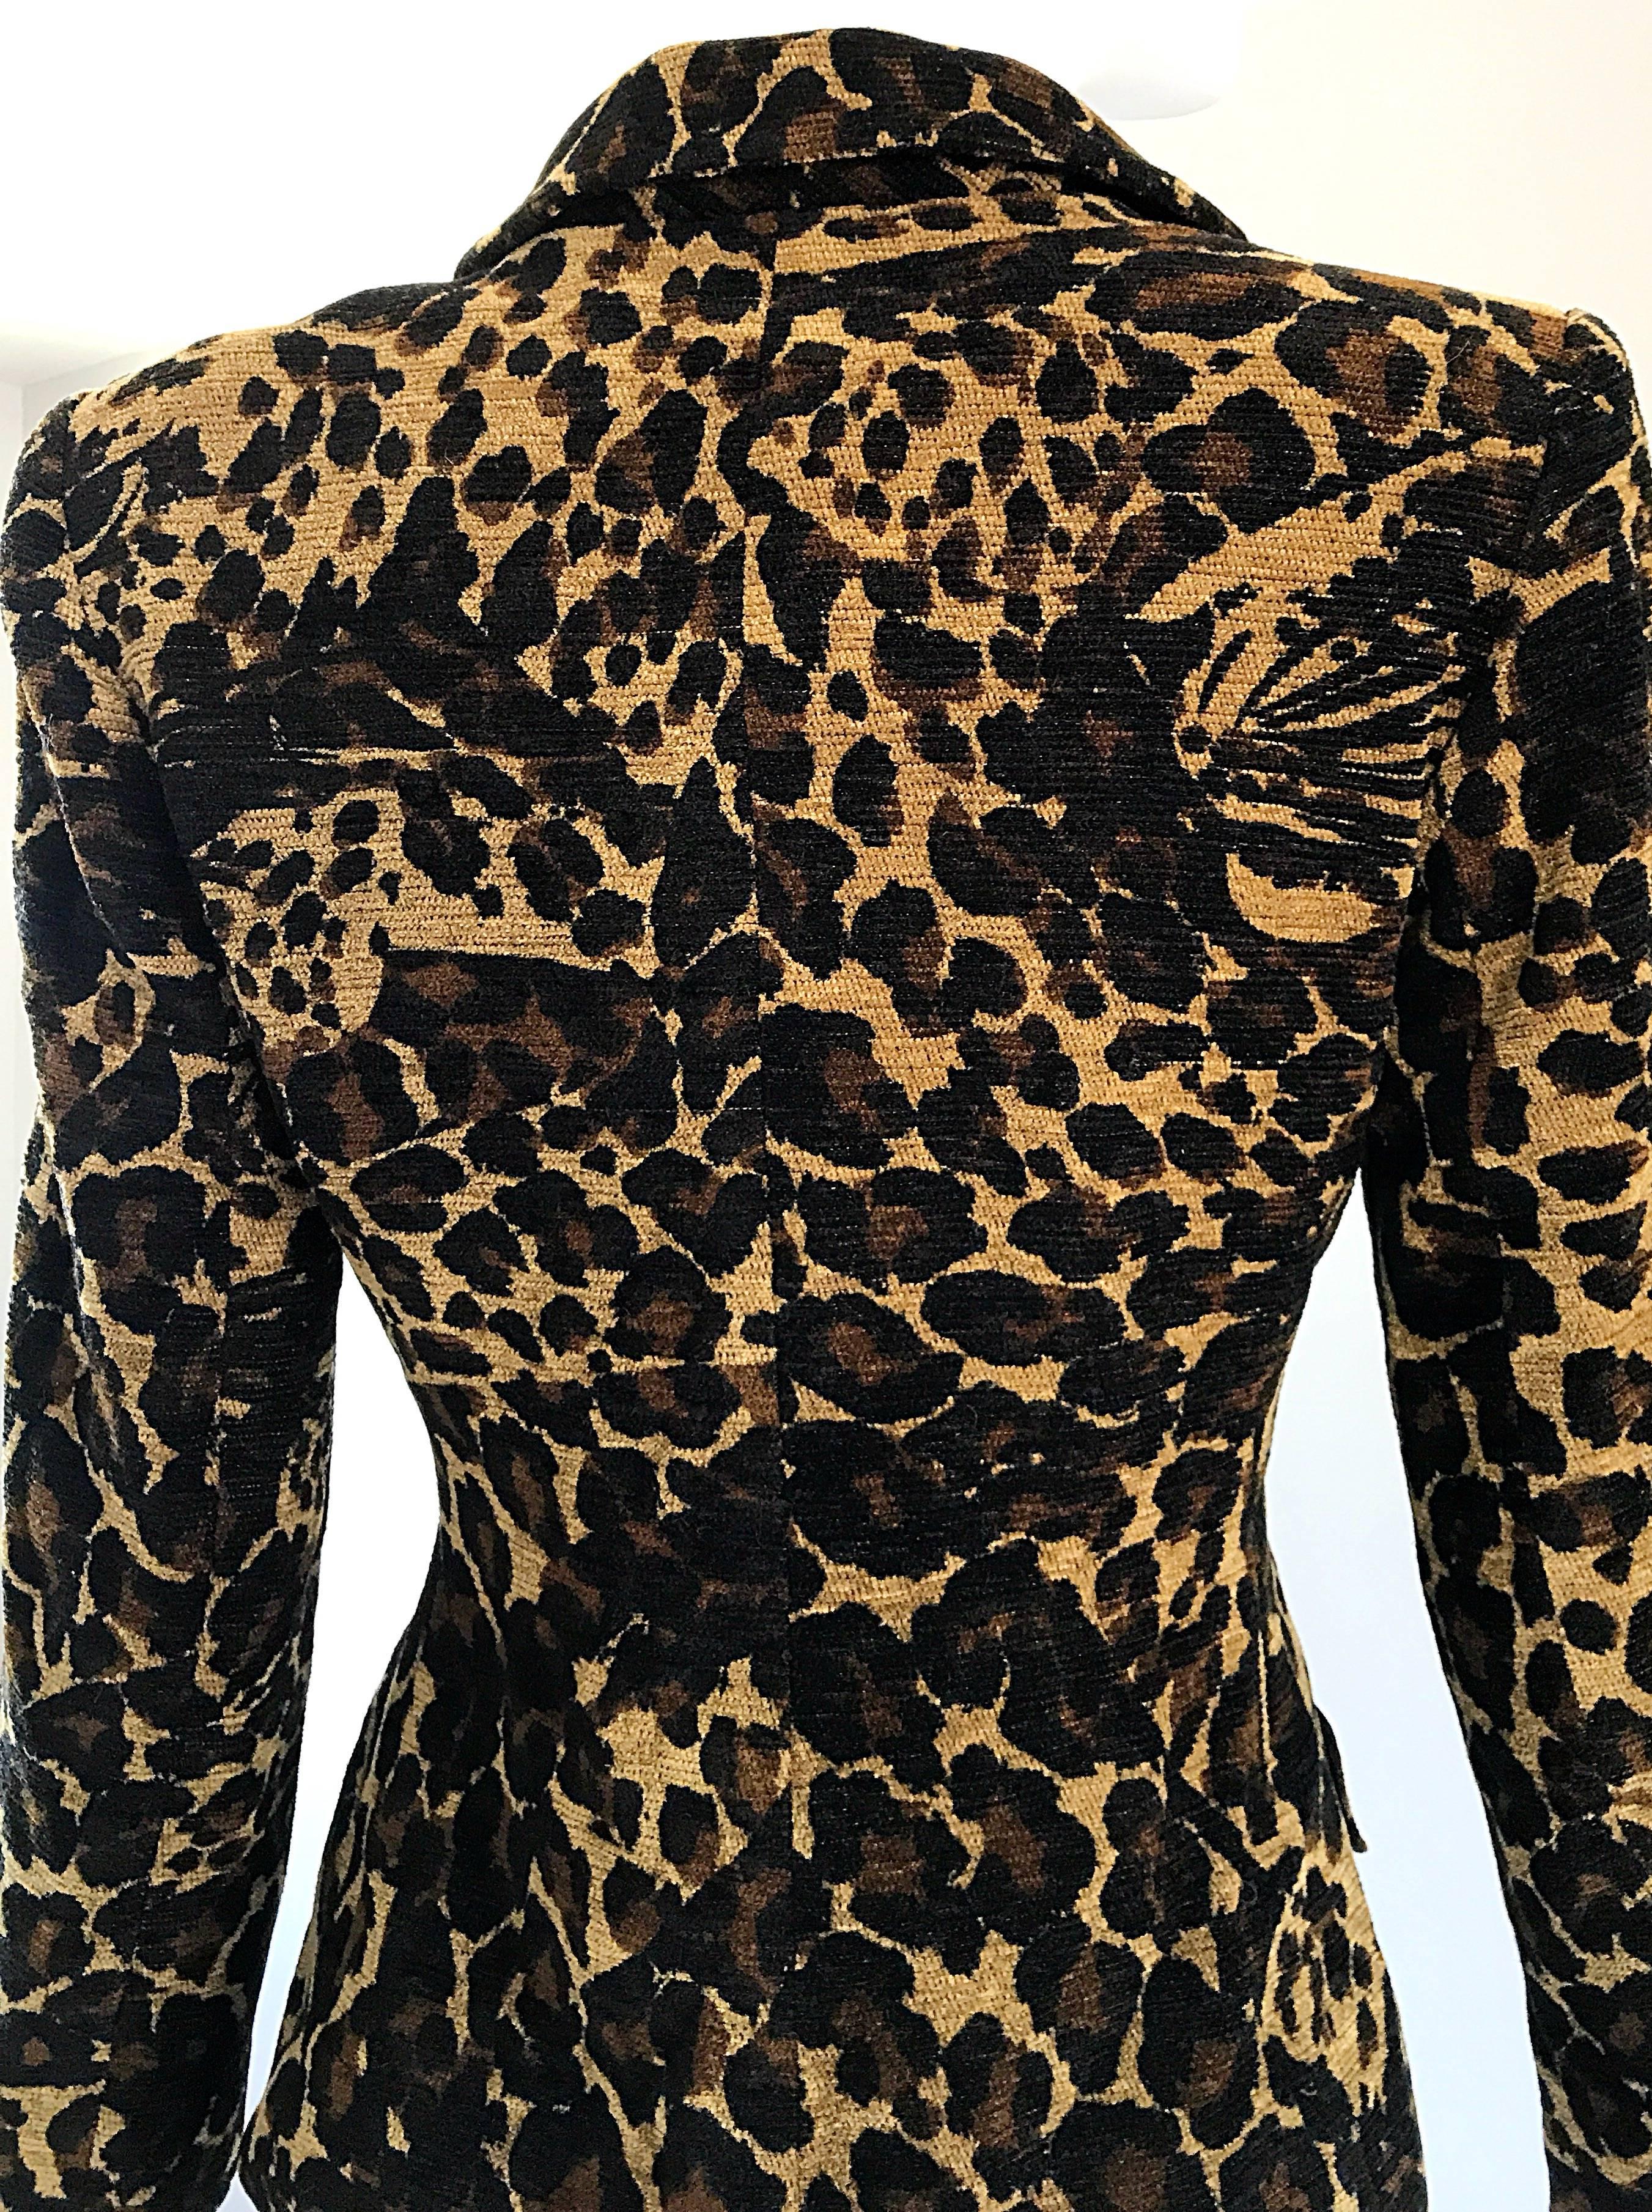 Black Iconic Yves Saint Laurent 1990s Leopard Print Chenille Vintage 90s Jacket Blazer For Sale